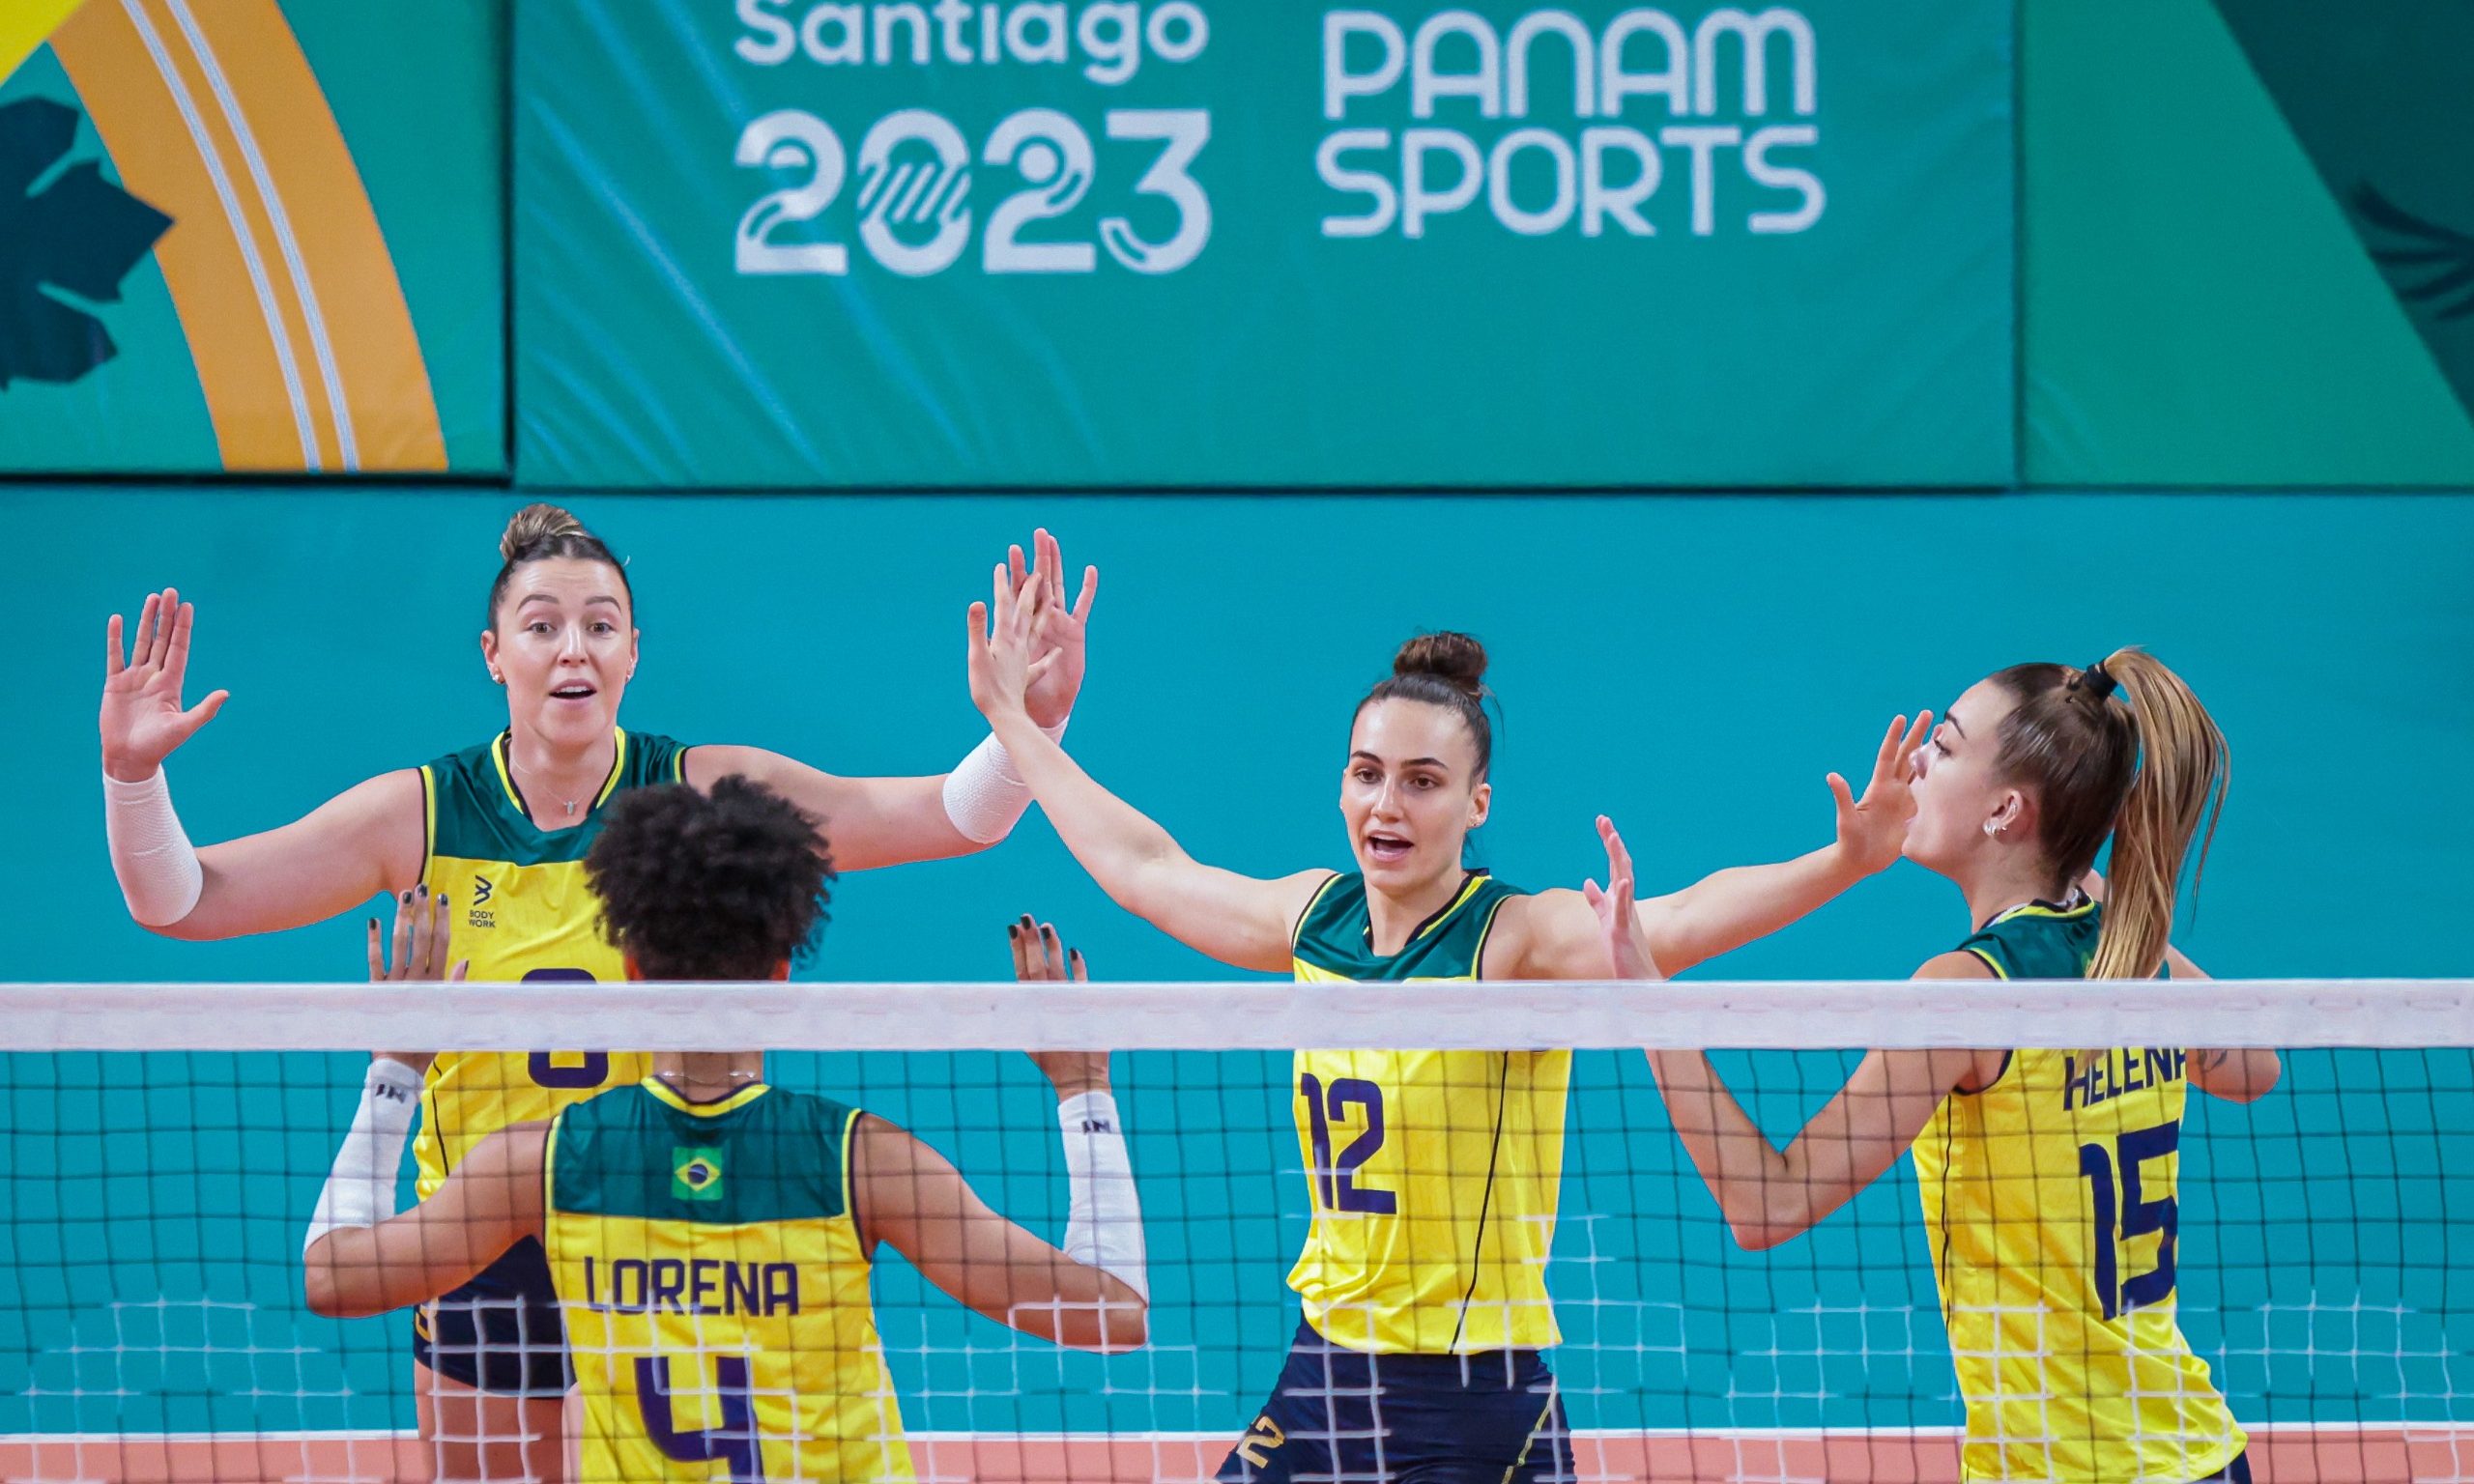 Tênis nos Jogos Pan-Americanos de Santiago 2023: programação completa, onde  assistir e todas as informações